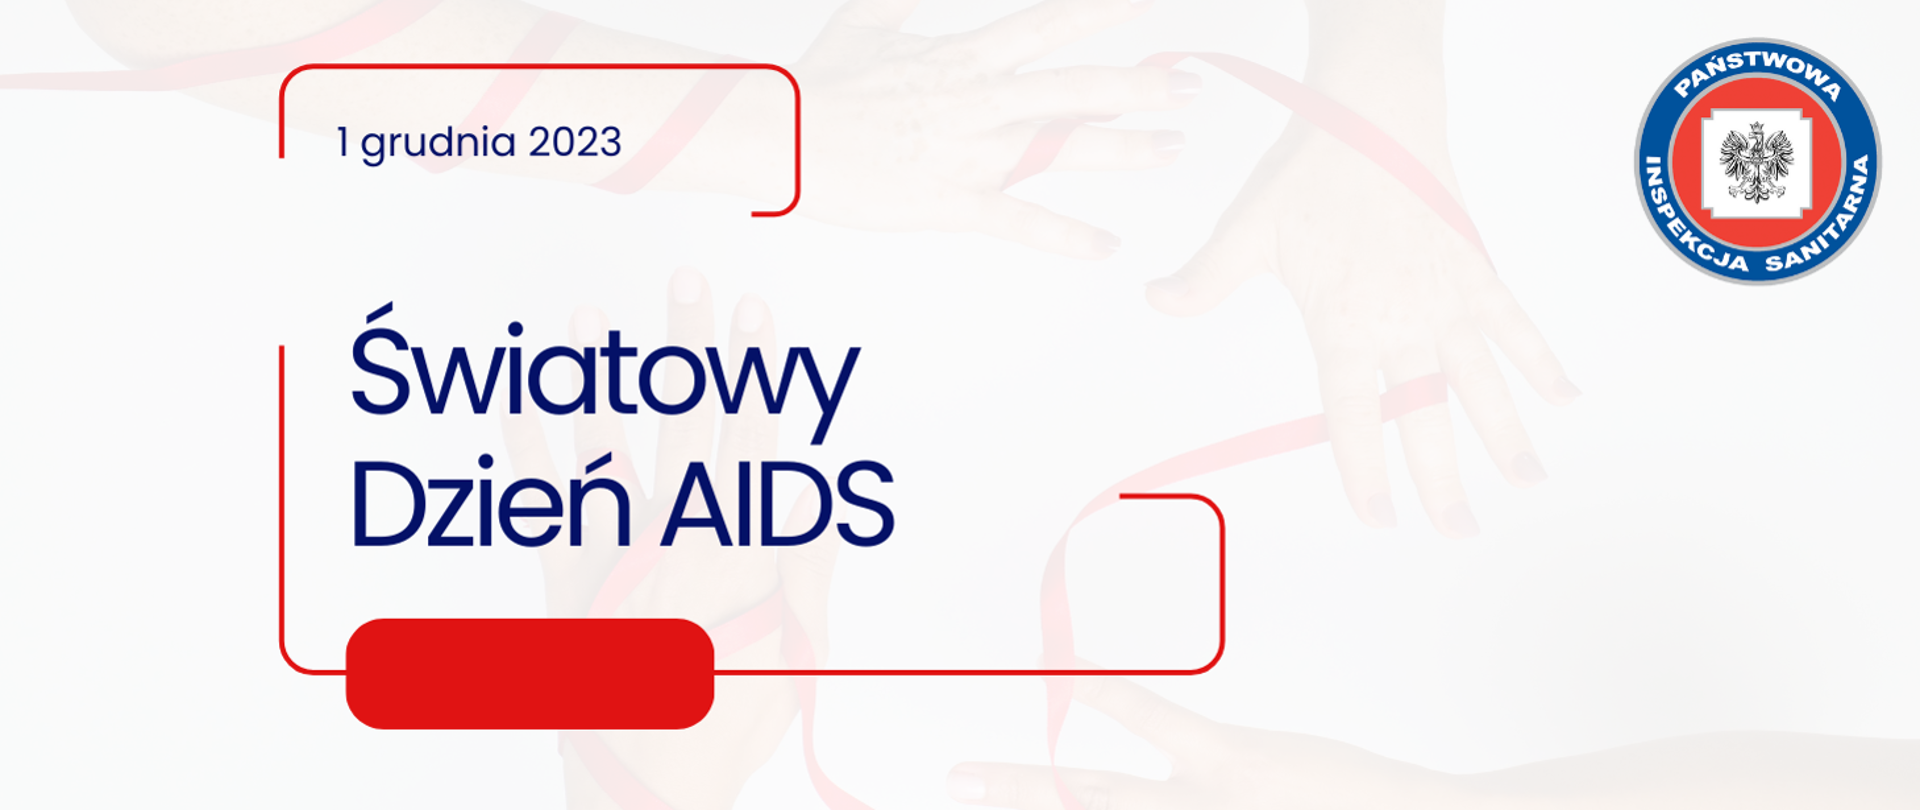 Na białym tle z rękoma oplecionymi czerwoną wstęgą umieszczono napis w czerwonej ramce o treści 1 grudnia 2023 Światowy Dzień AIDS. Po prawej stronie umieszczono logo Państwowej Inspekcji Sanitarnej.